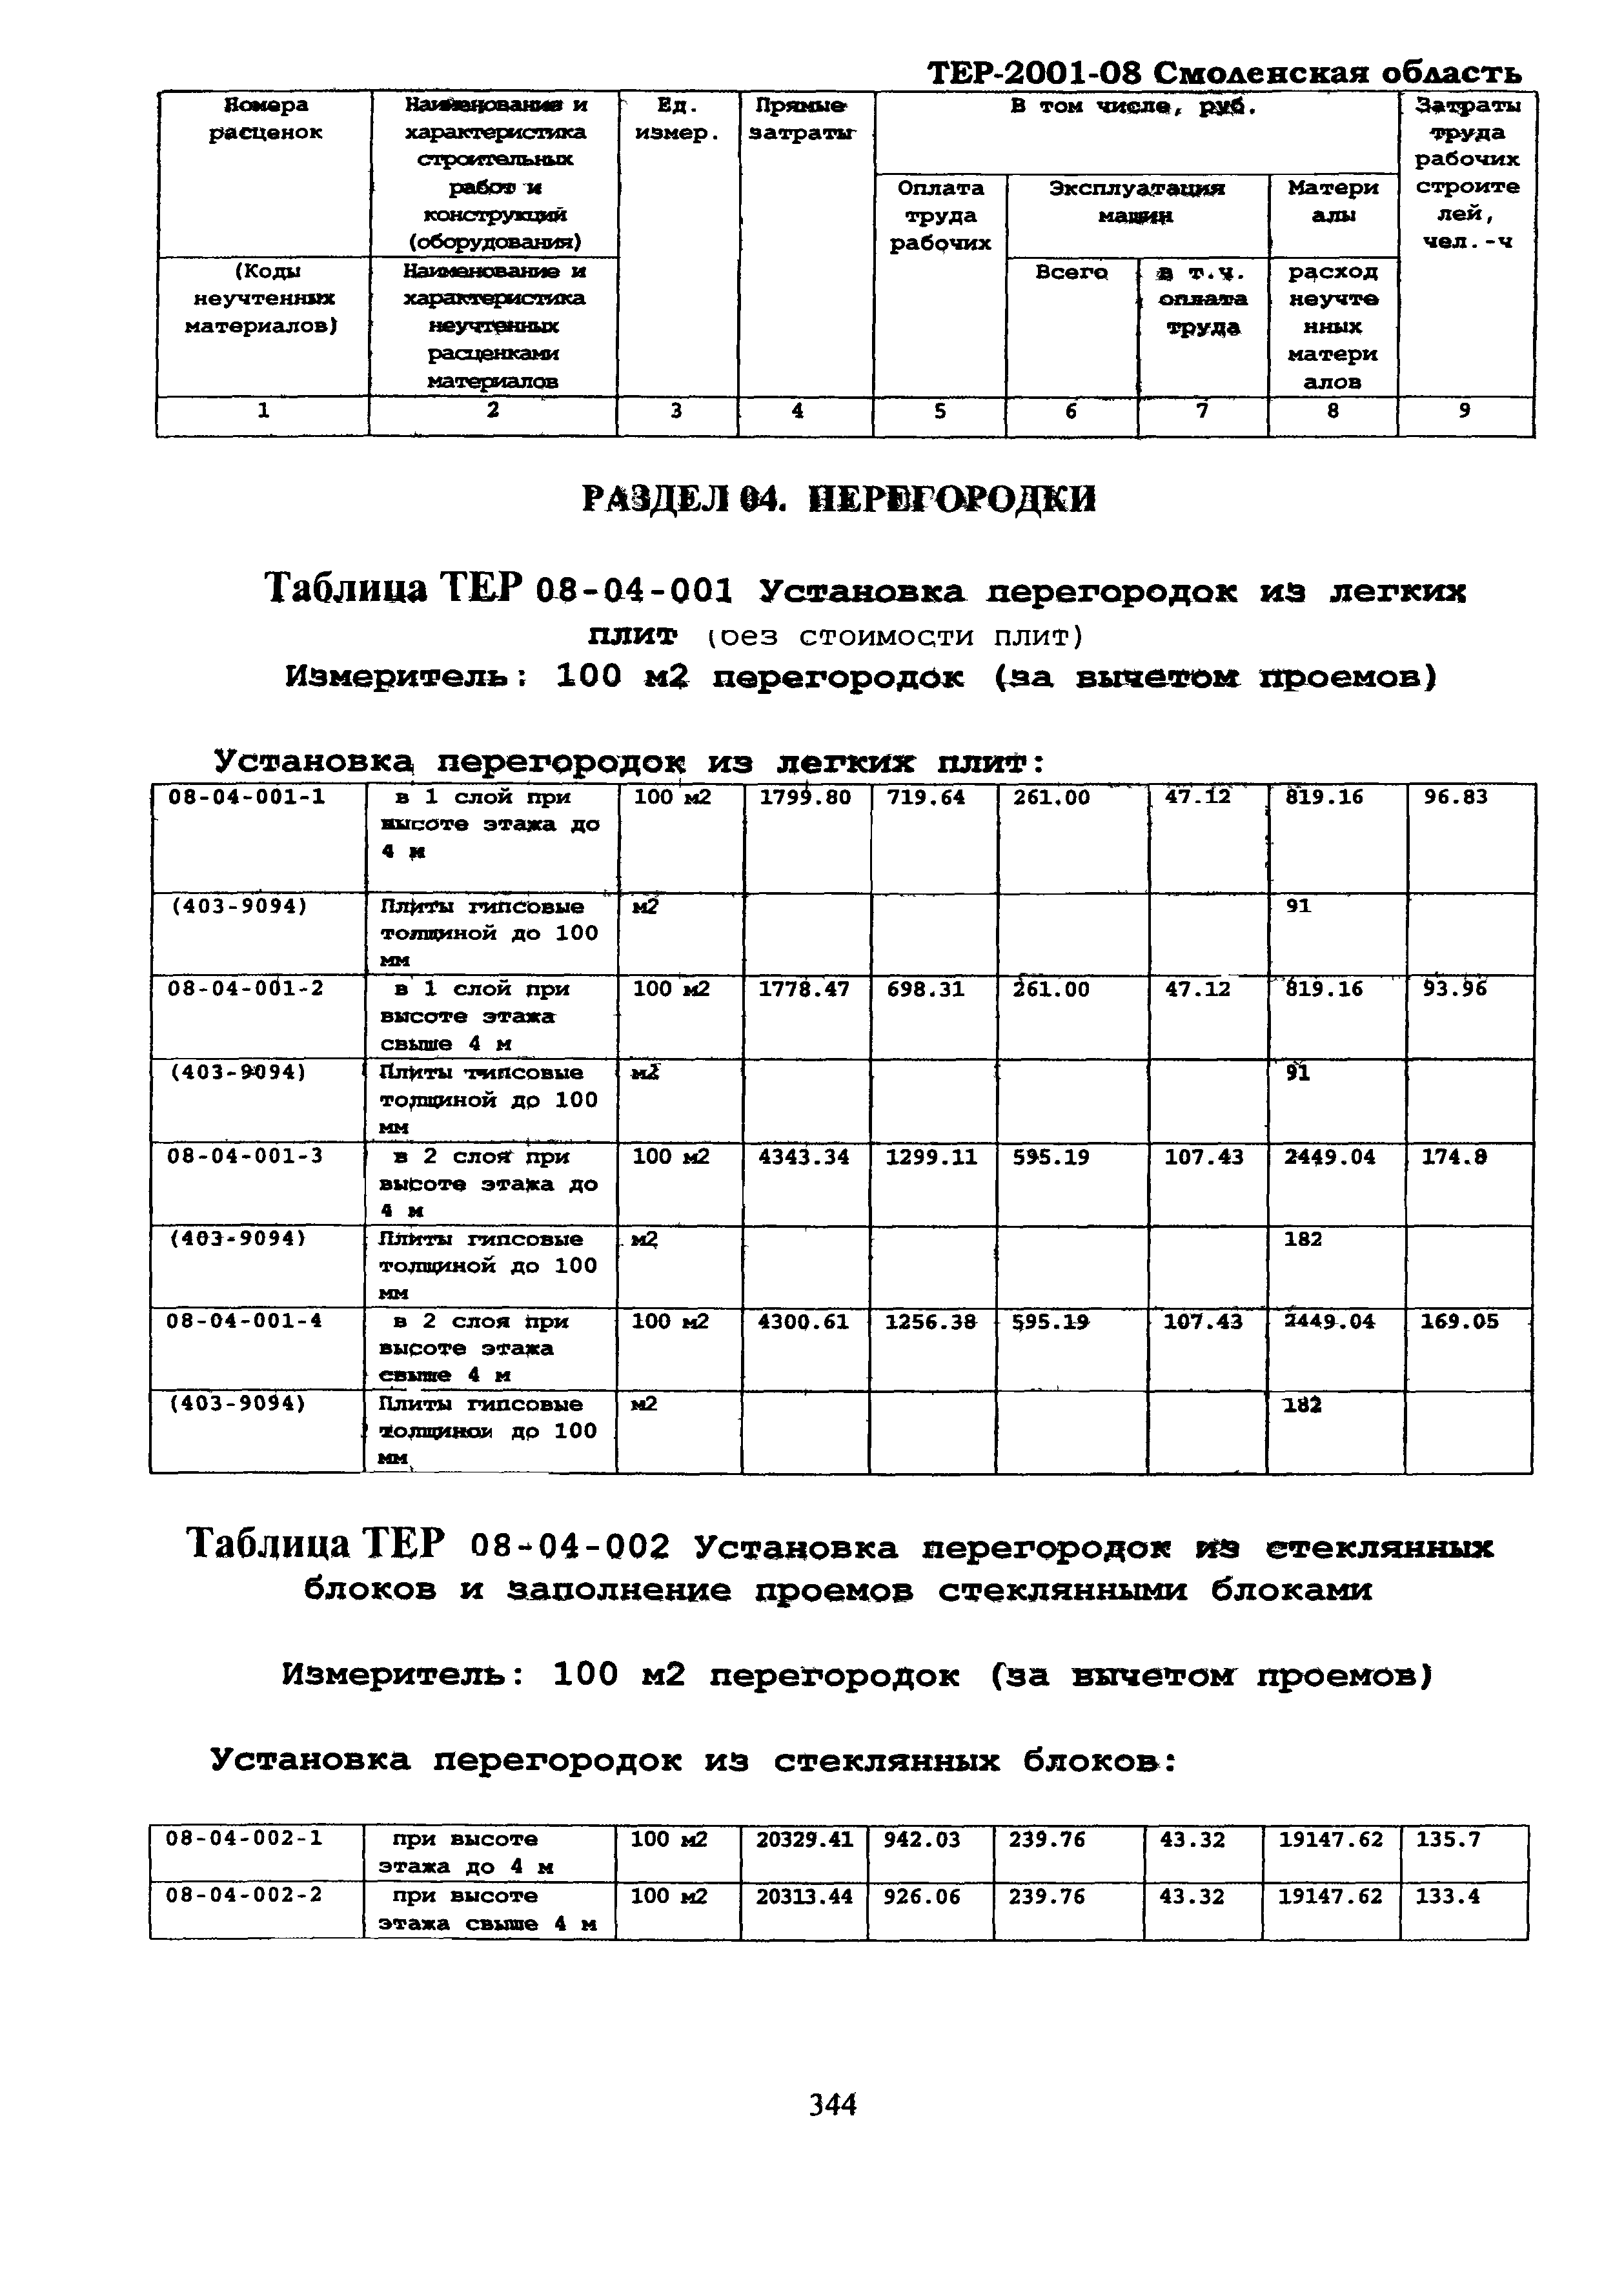 ТЕР Смоленская область 2001-08